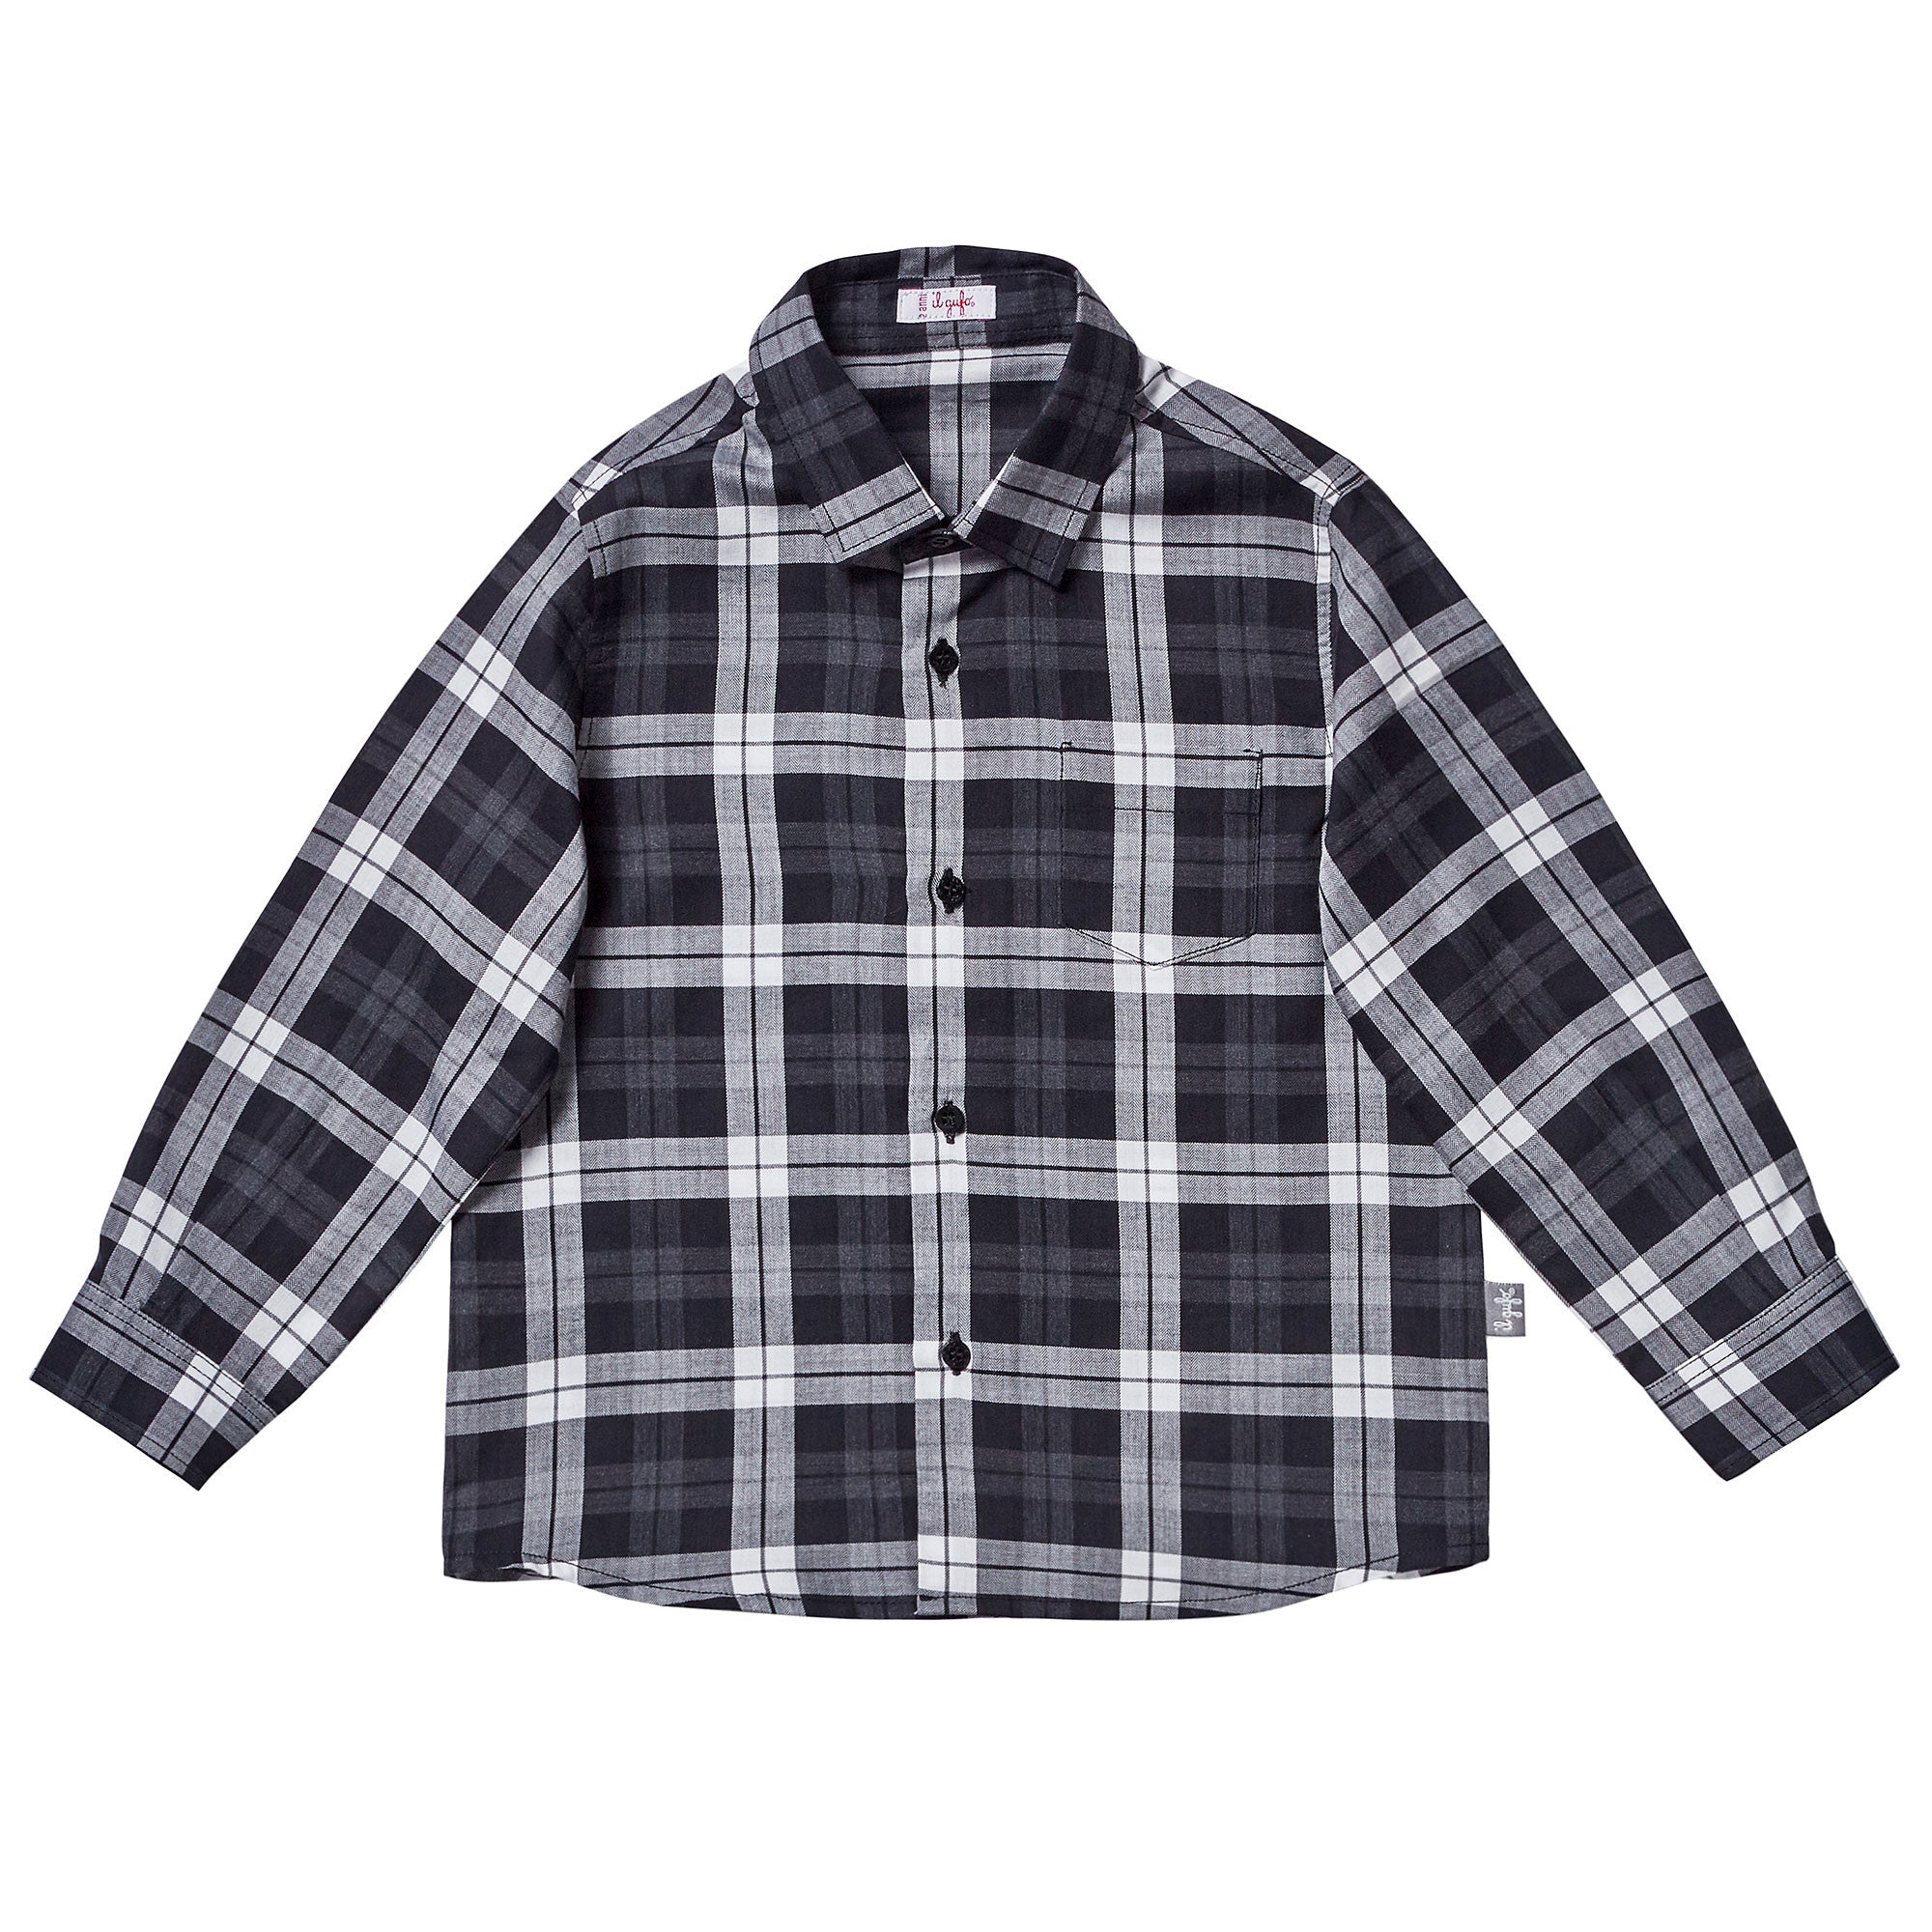 Boys Black Check Cotton Jersey Check Shirt - CÉMAROSE | Children's Fashion Store